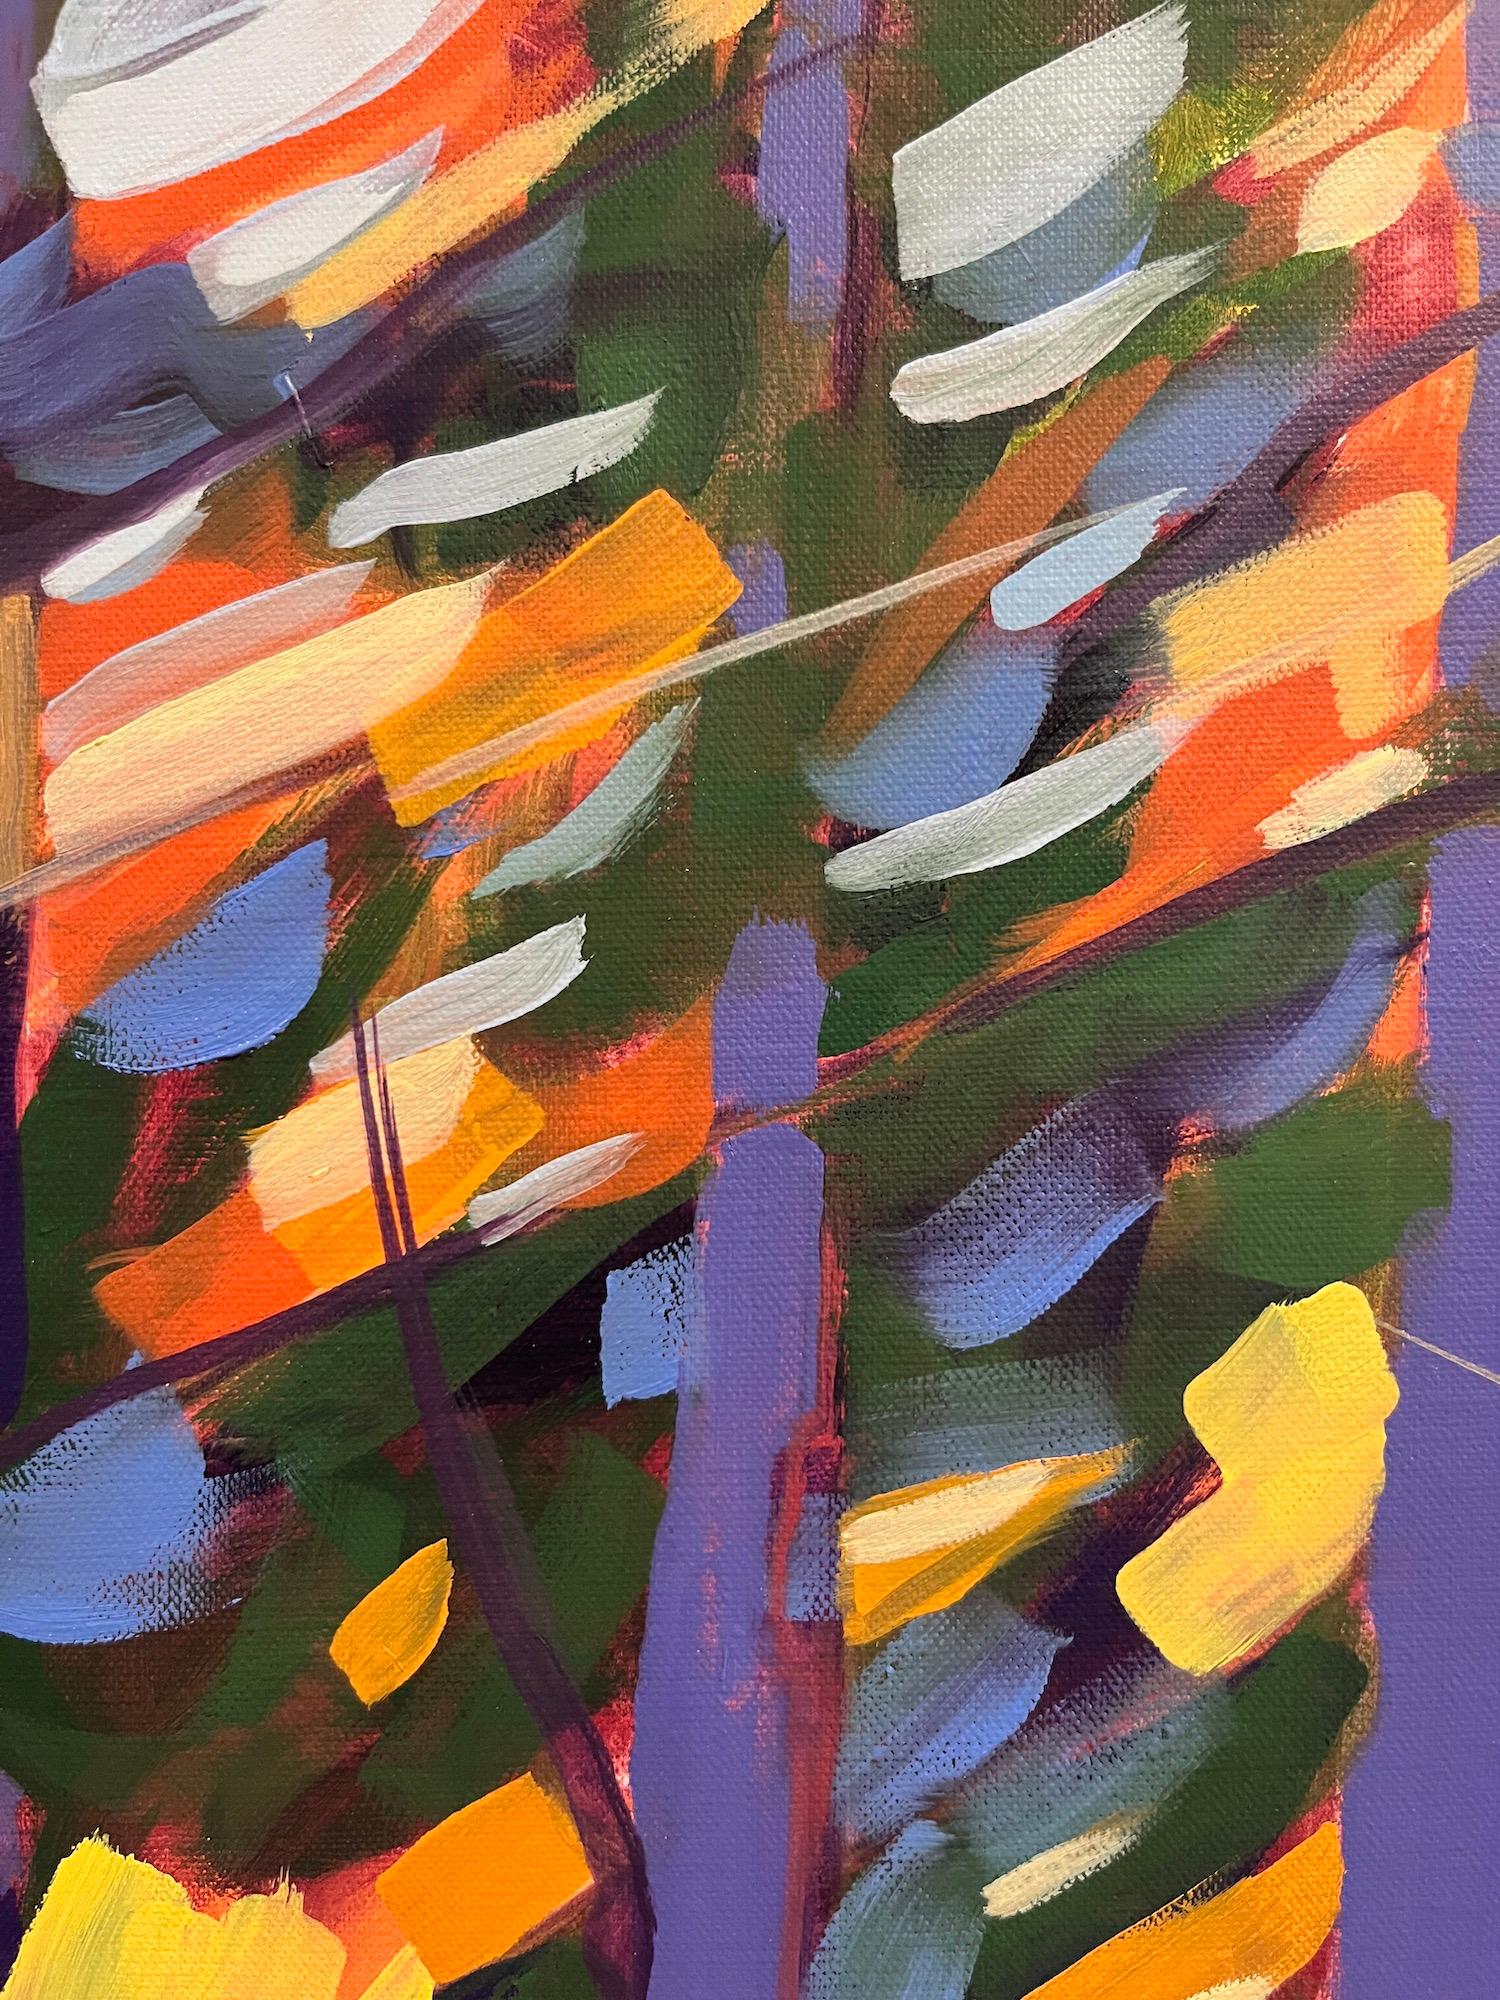 contemporary tree paintings